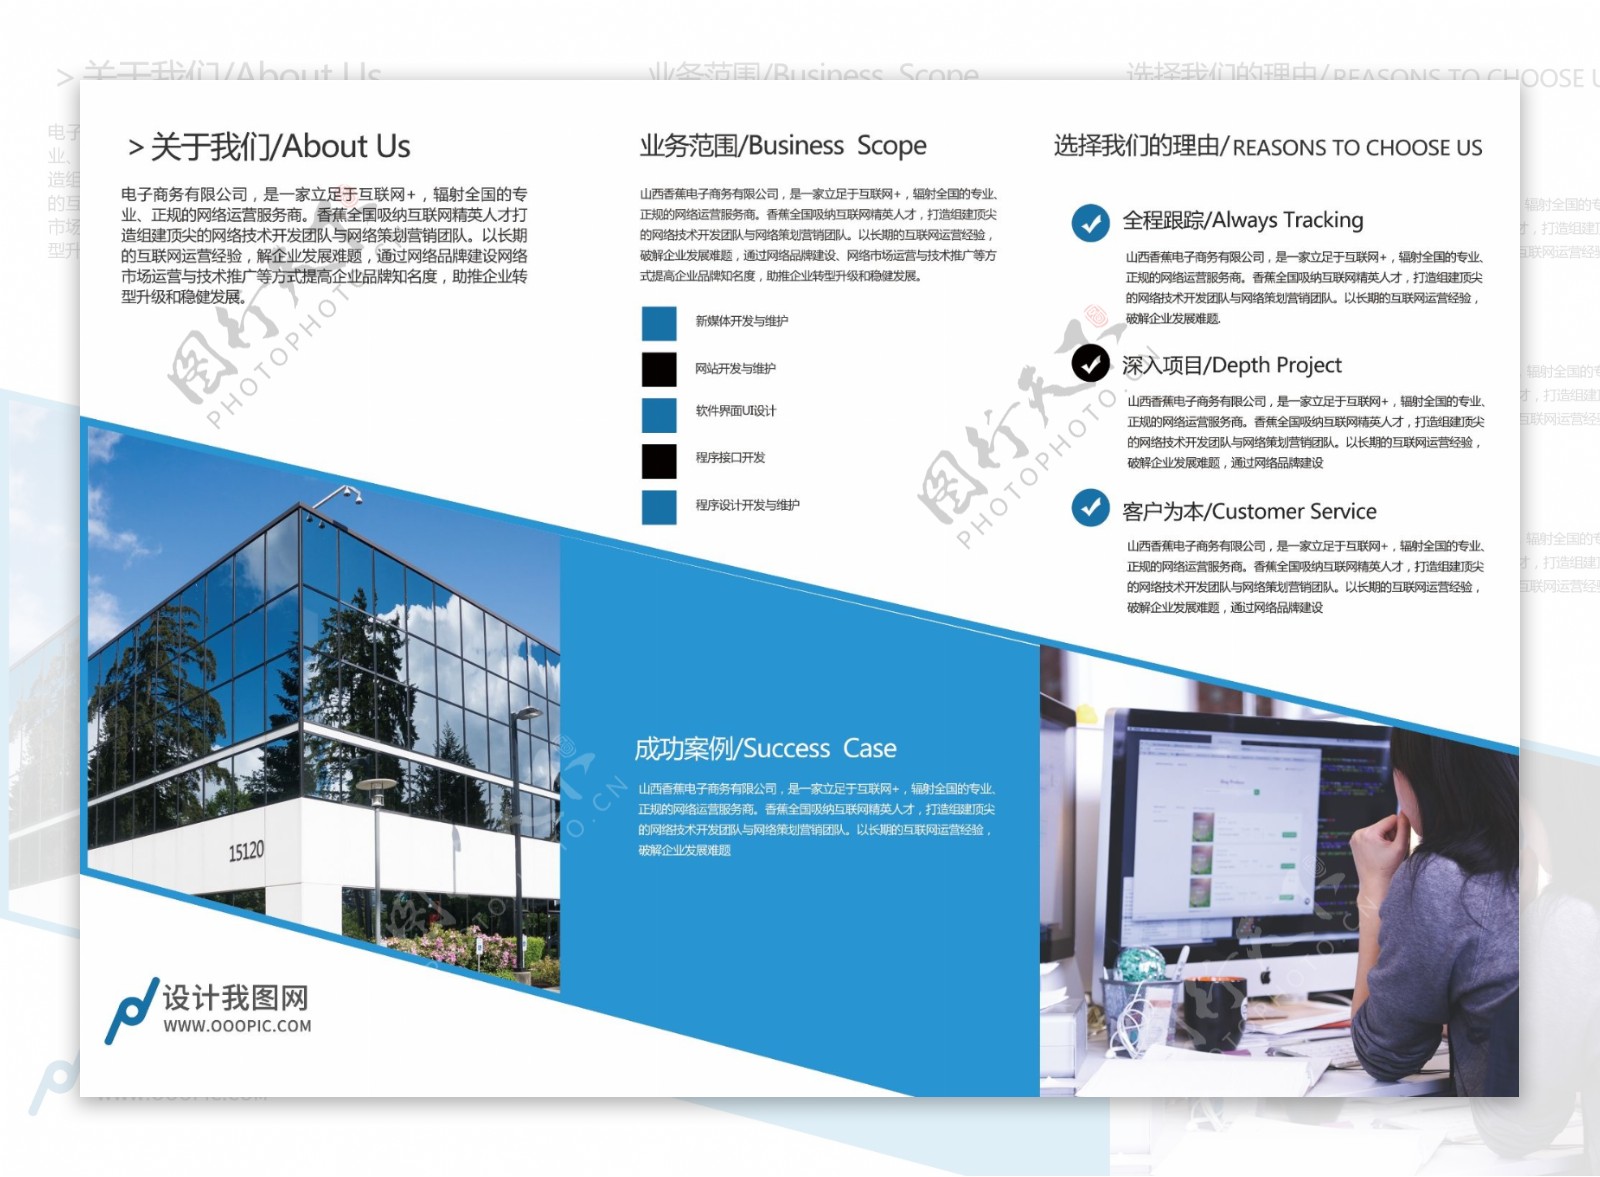 2017年蓝色科技企业咨询折页模板设计